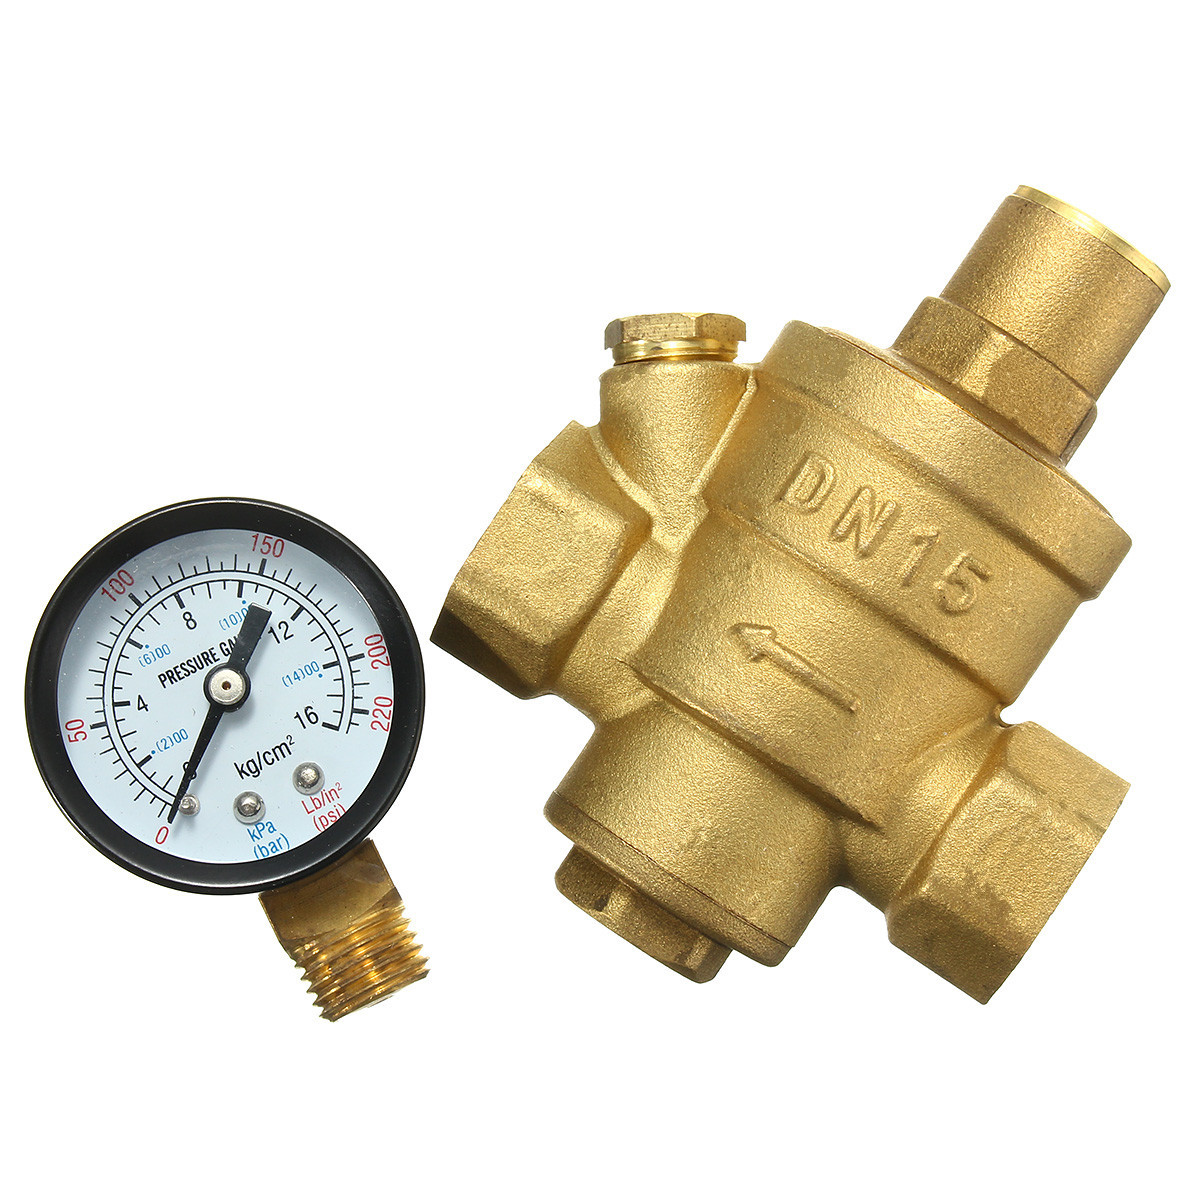 Adjustable-DN15-Bspp-Brass-Water-Pressure-Reducing-Valve-with-Gauge-Flow-1104771-5